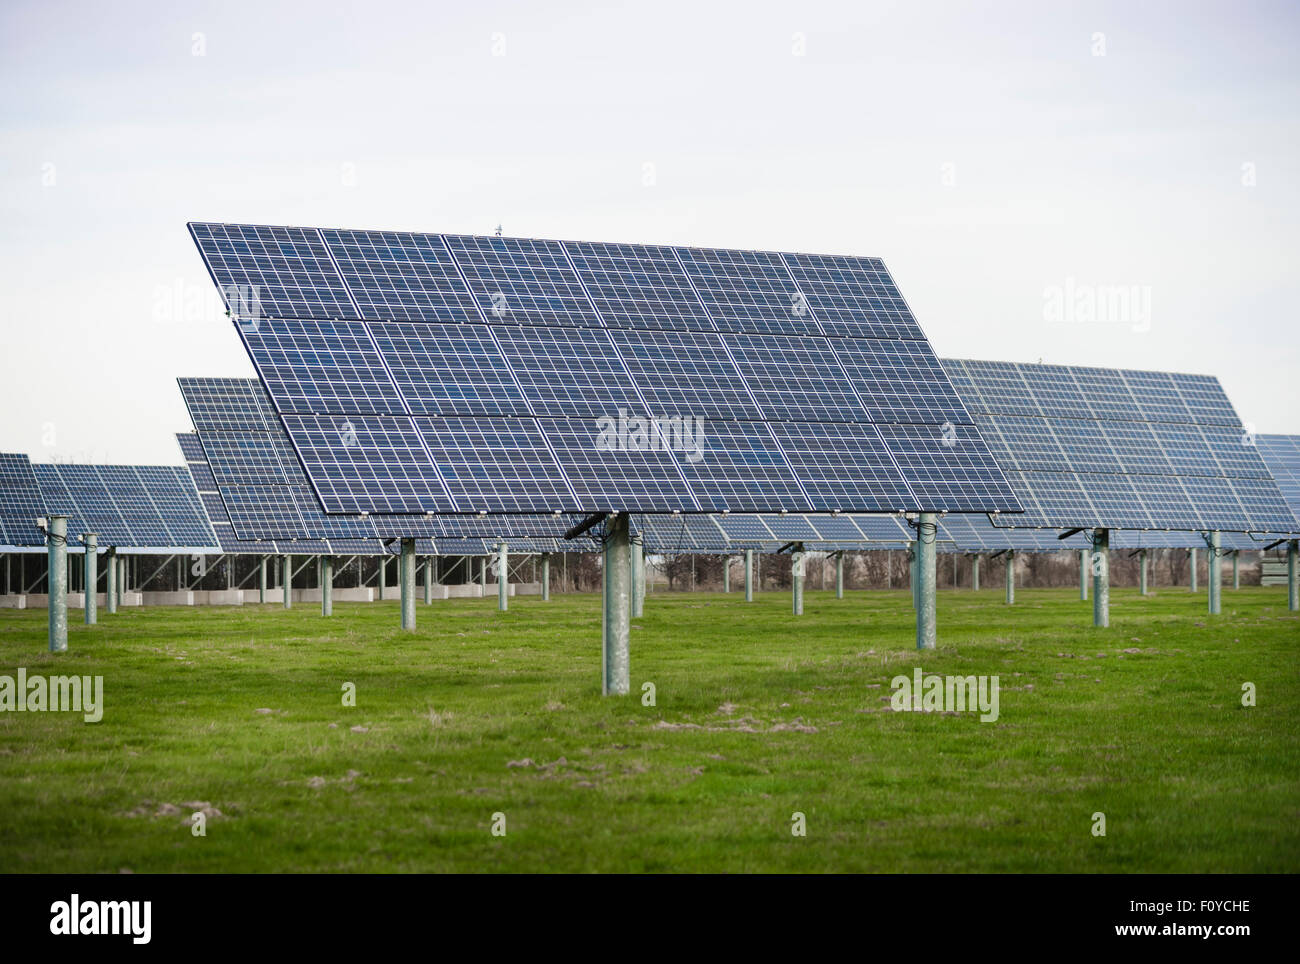 Dårligt humør lager værktøj Solar Panels Field High Resolution Stock Photography and Images - Alamy